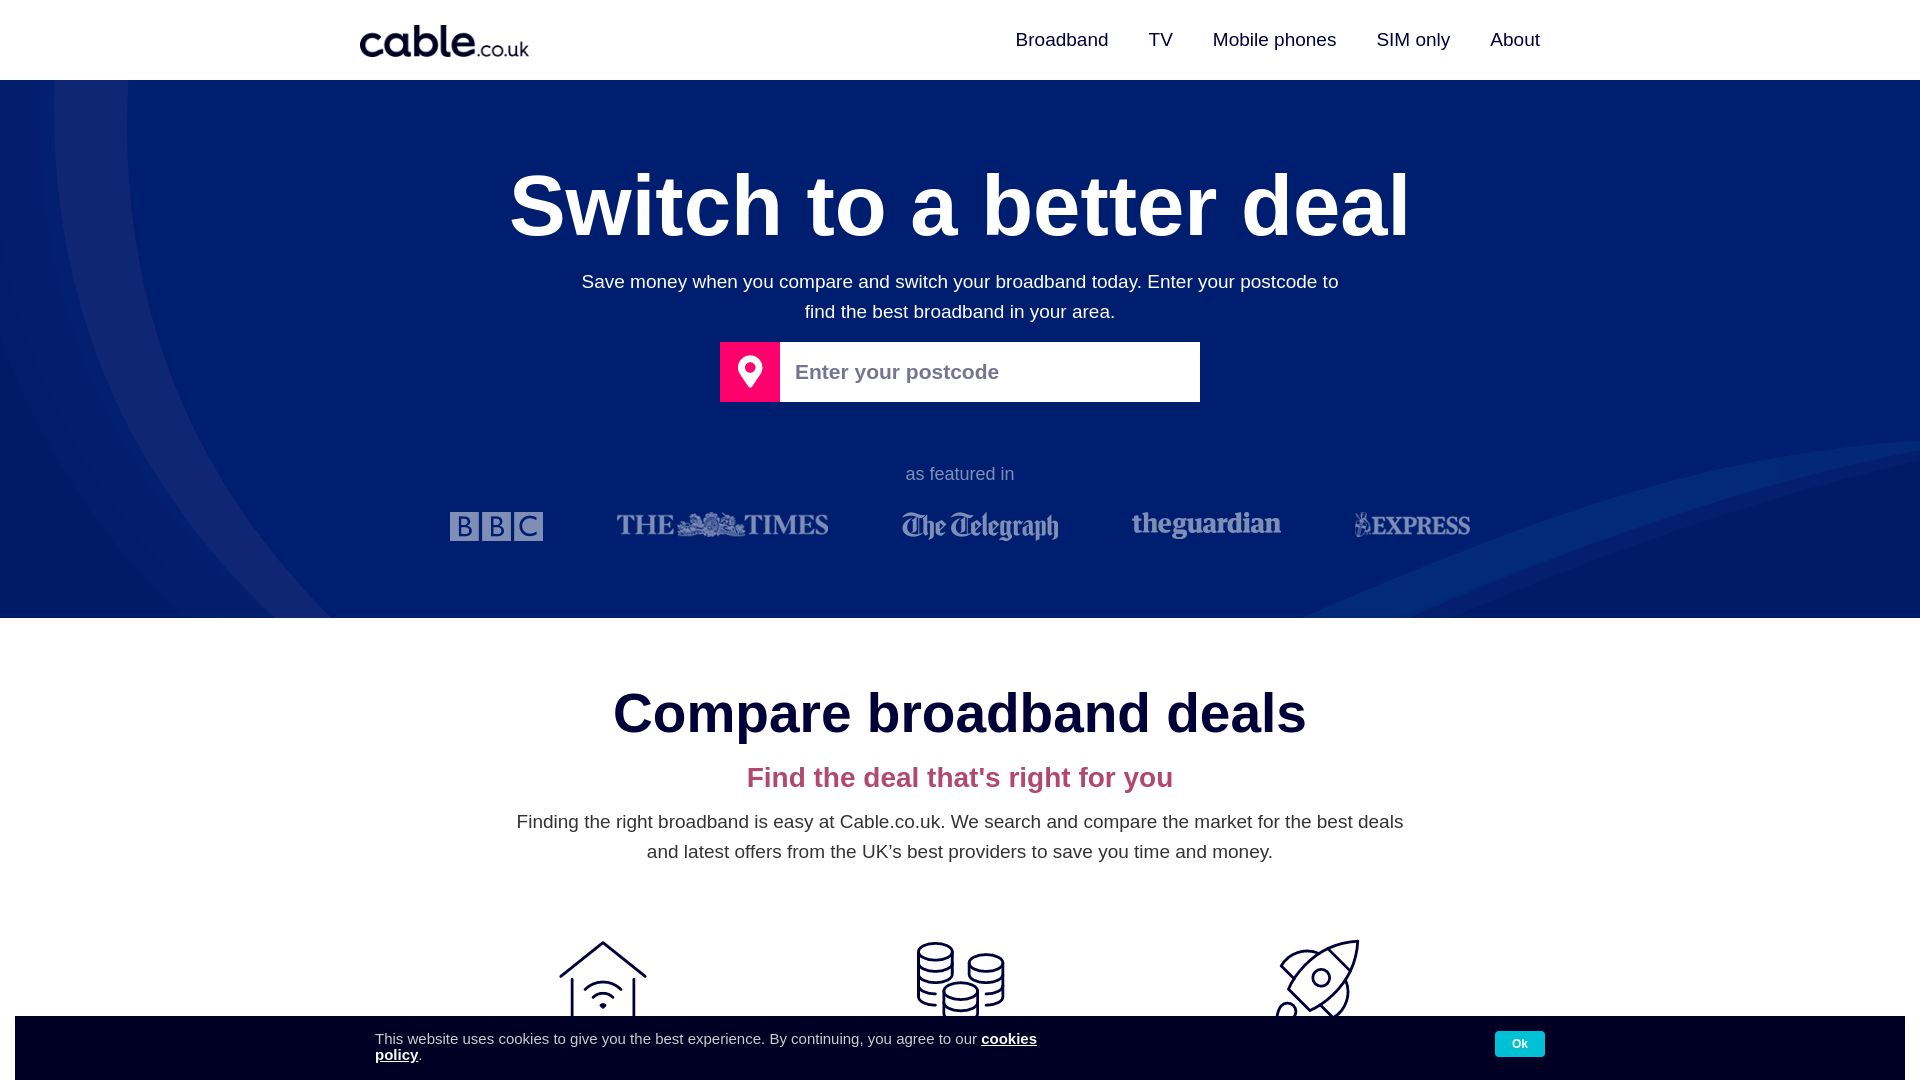 网站状态 cable.co.uk 是  在线的